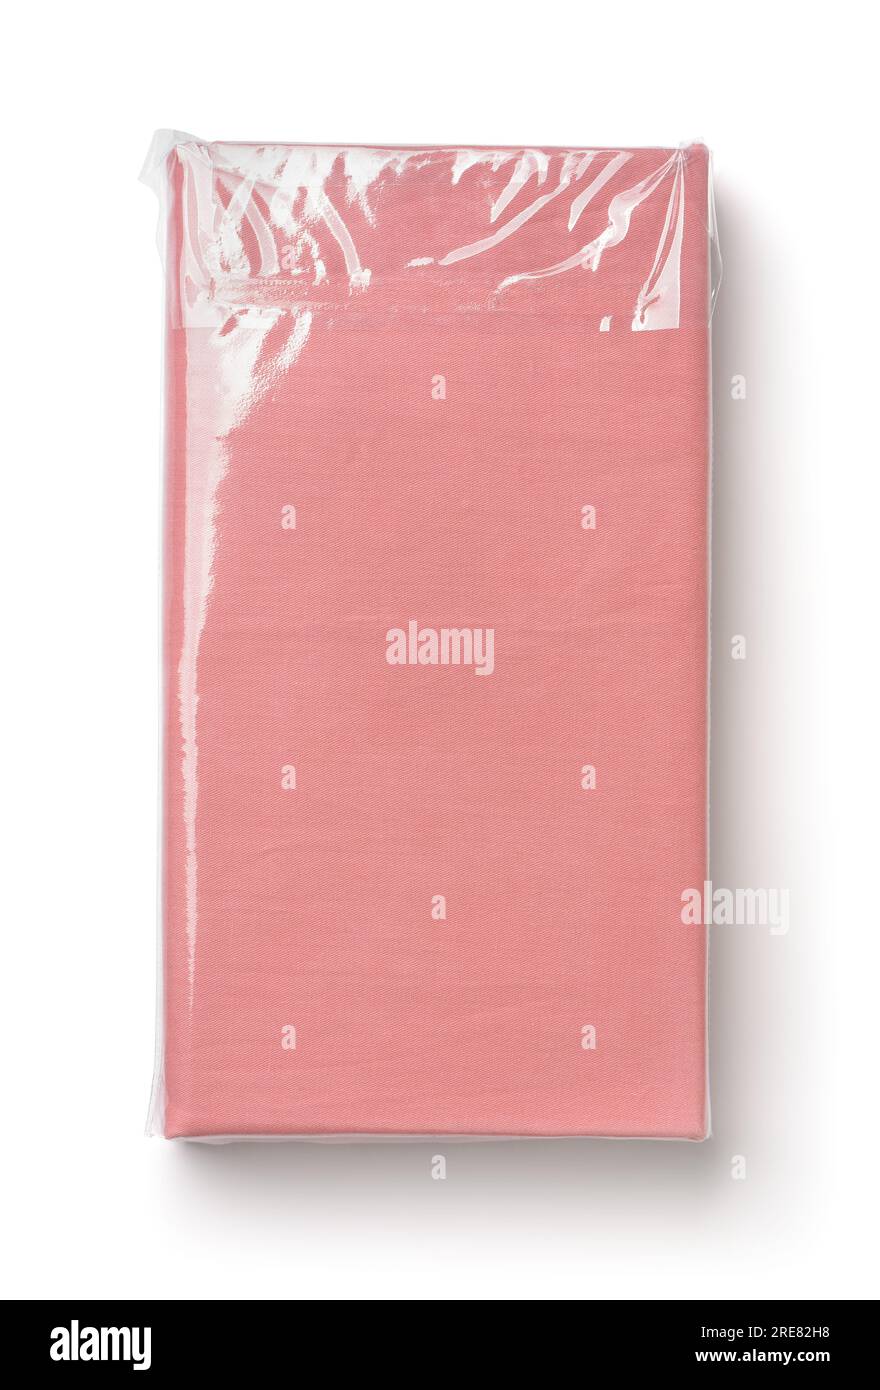 Vue de dessus des draps pliés en coton rose dans un sac en plastique transparent isolé sur blanc Banque D'Images